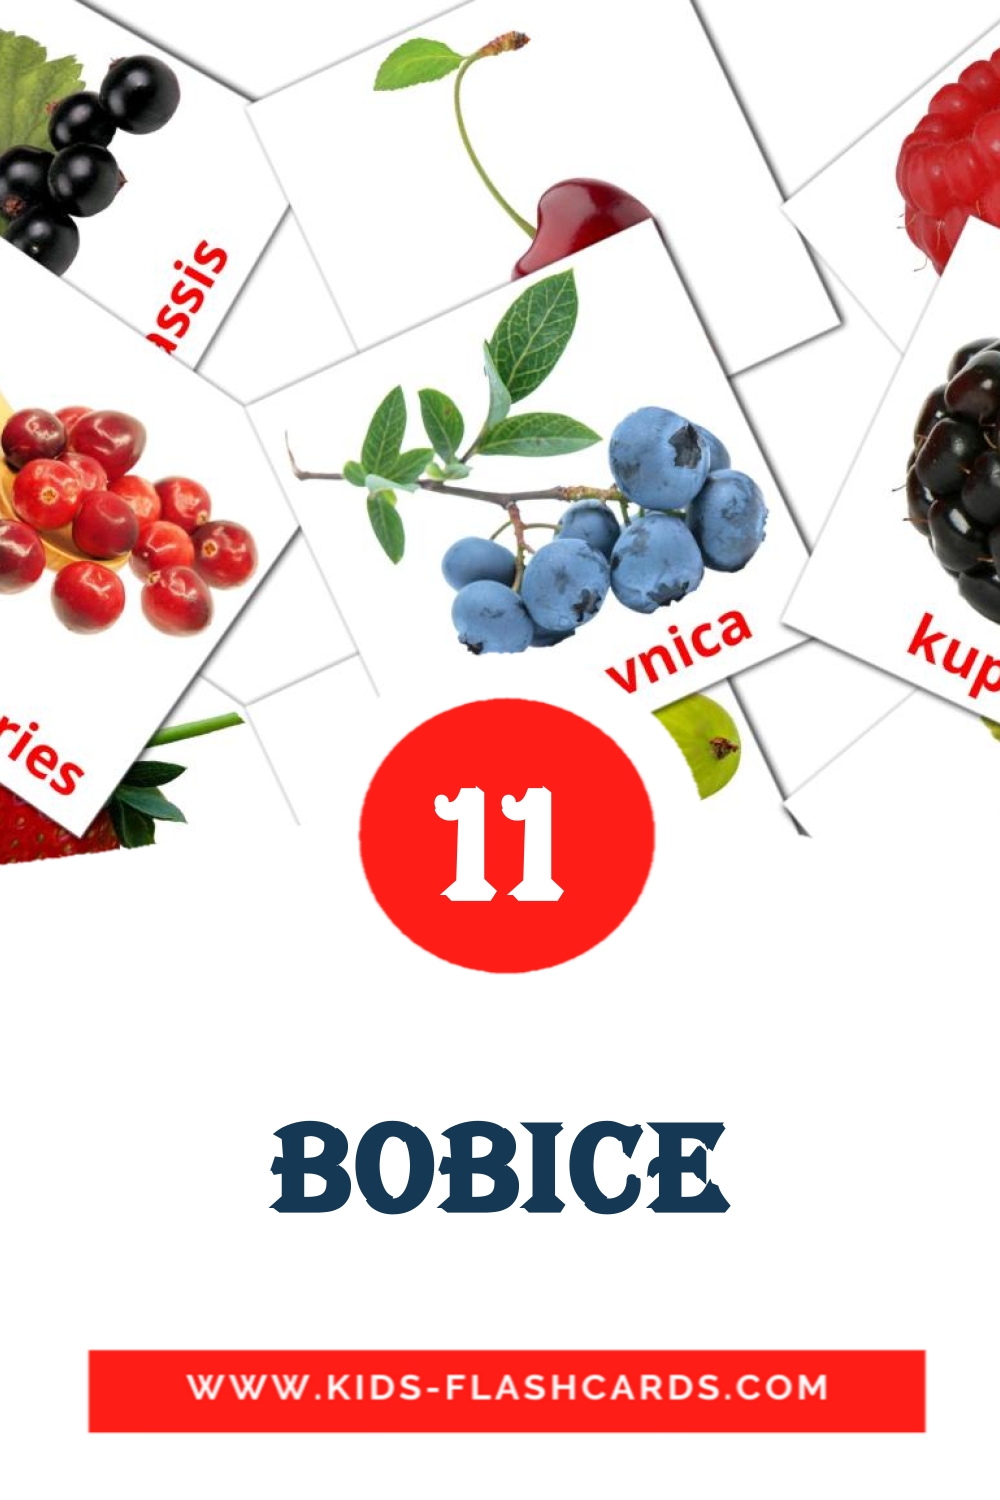 11 Cartões com Imagens de Bobice para Jardim de Infância em bósnio